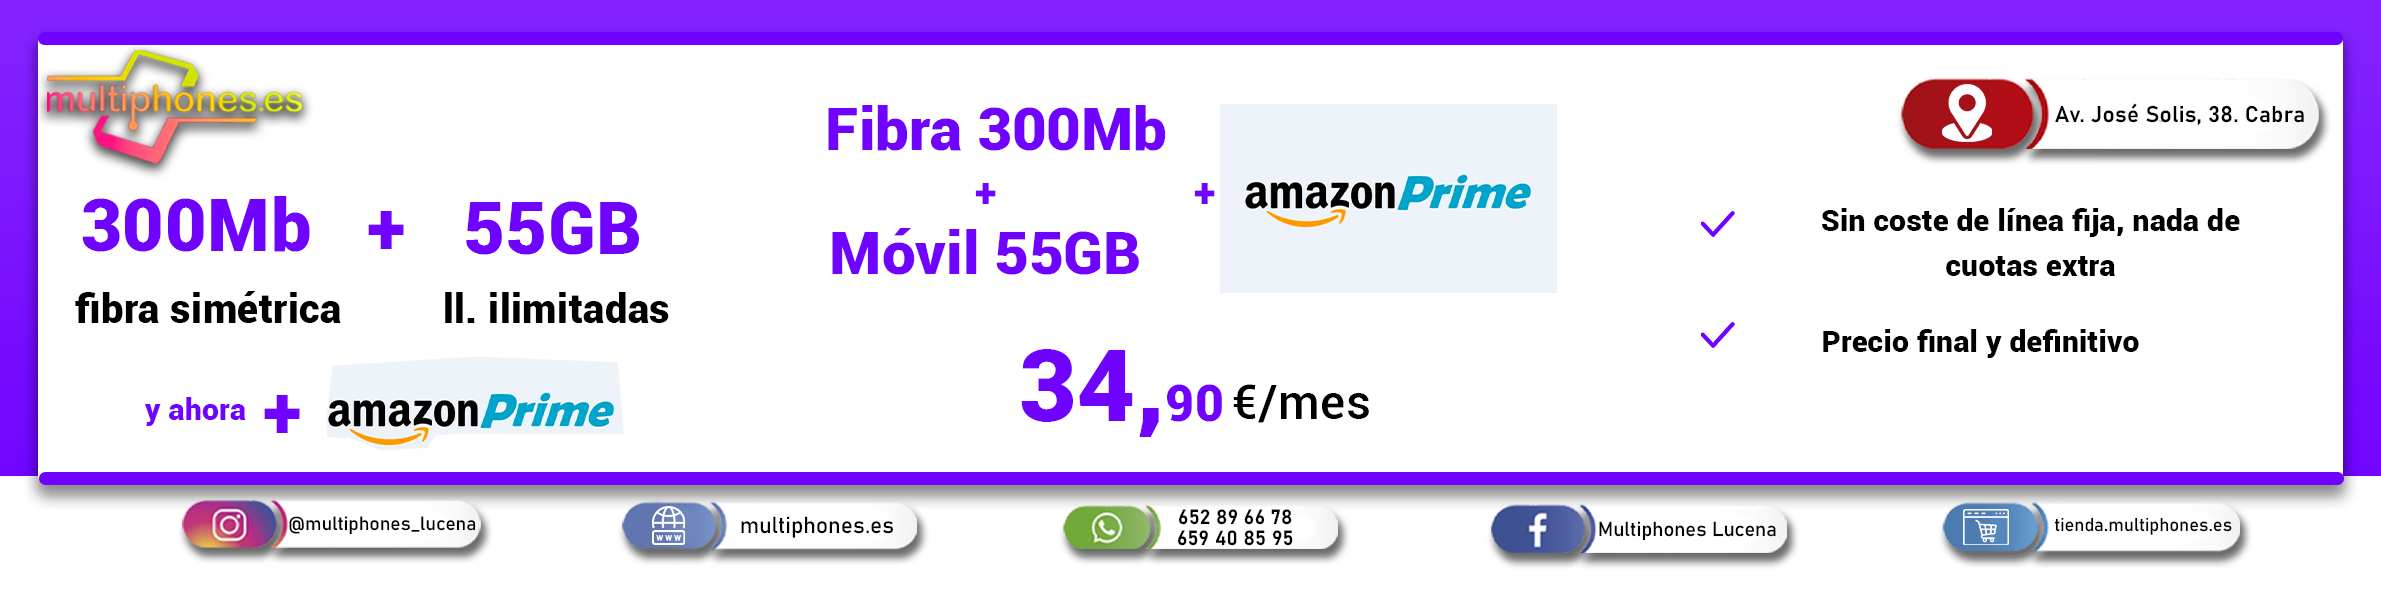 Finetwork Fibra 300Mb + 55GB + amazon prime